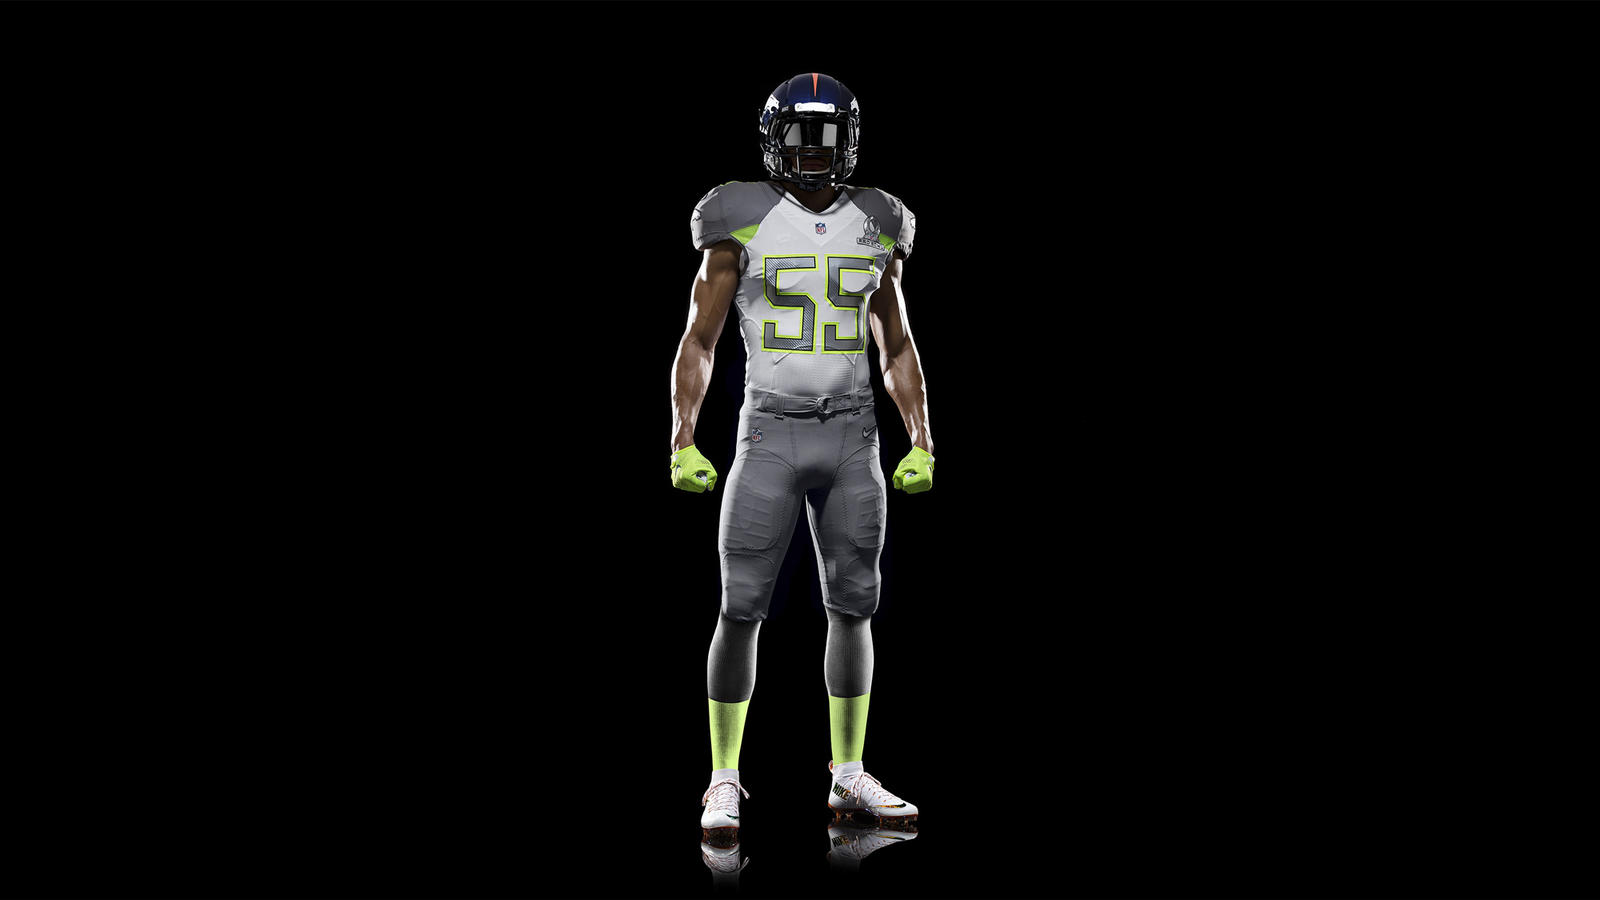 Nike Pro Bowl uniforms